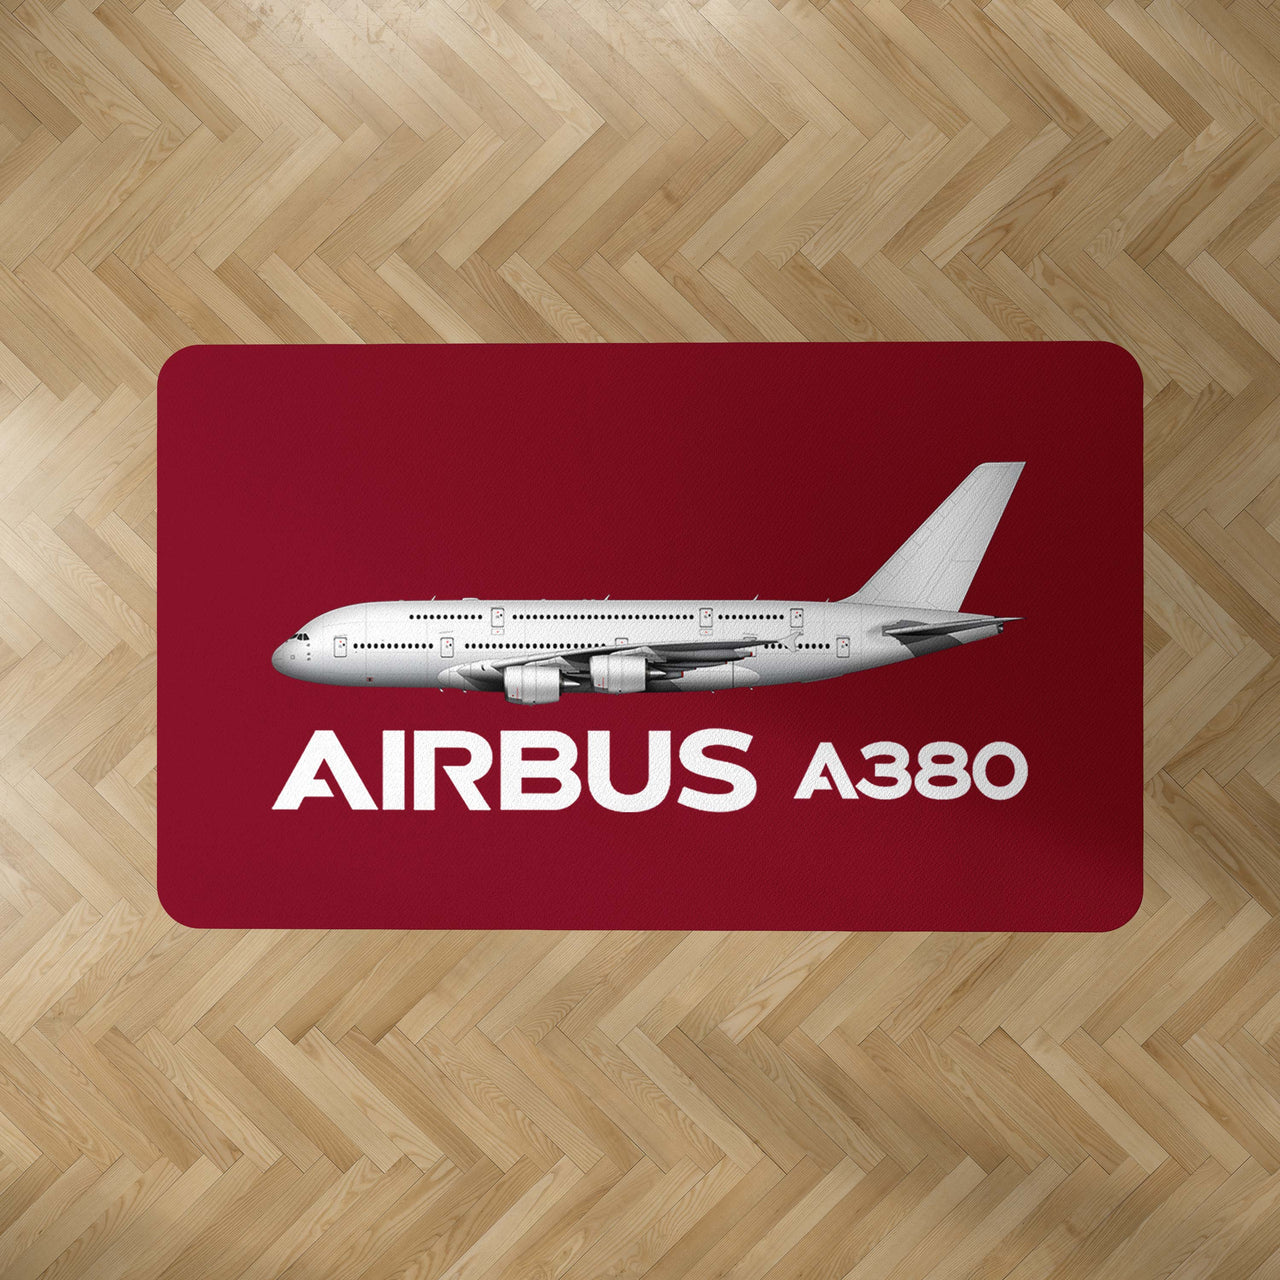 The Airbus A380 Designed Carpet & Floor Mats